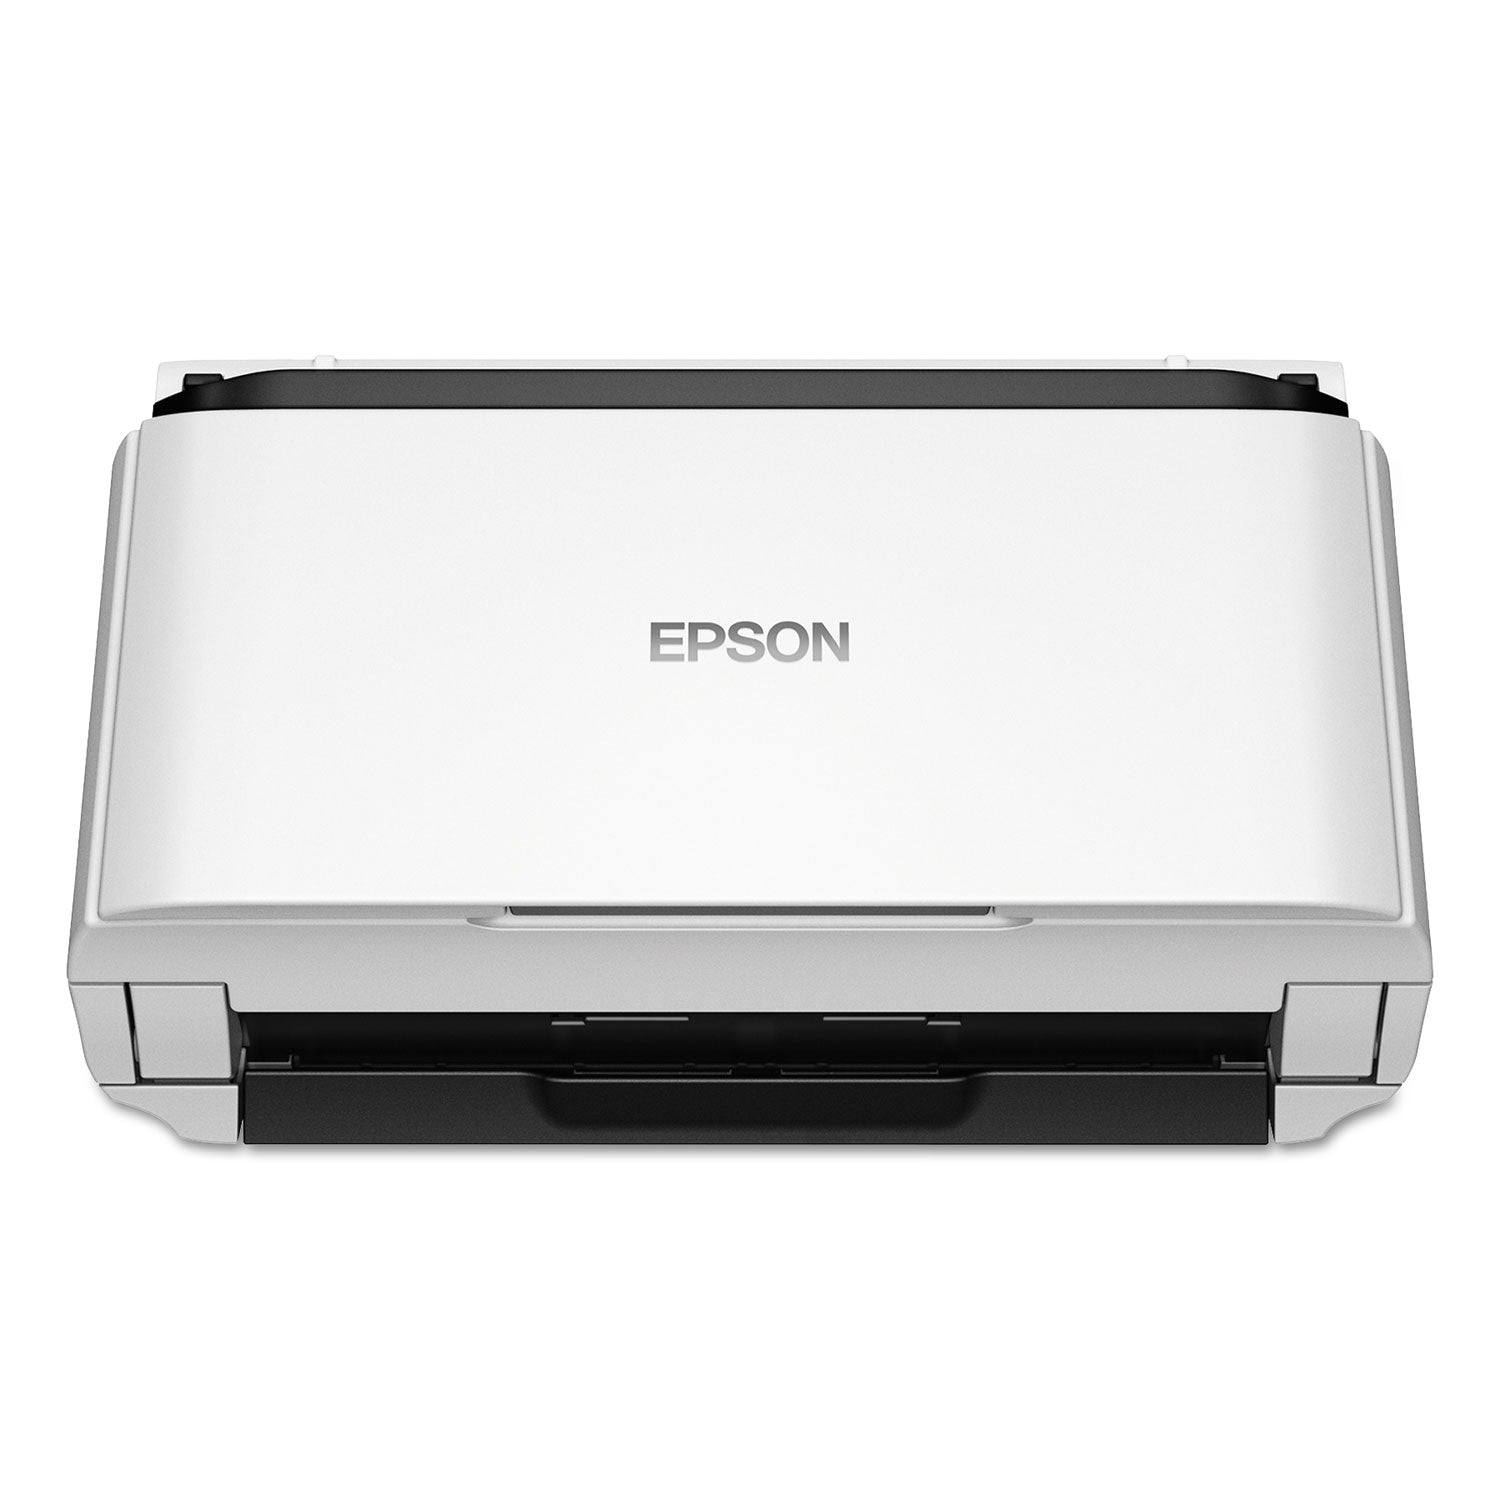 ds-410-document-scanner-600-dpi-optical-resolution-50-sheet-duplex-auto-document-feeder_epsb11b249201 - 3